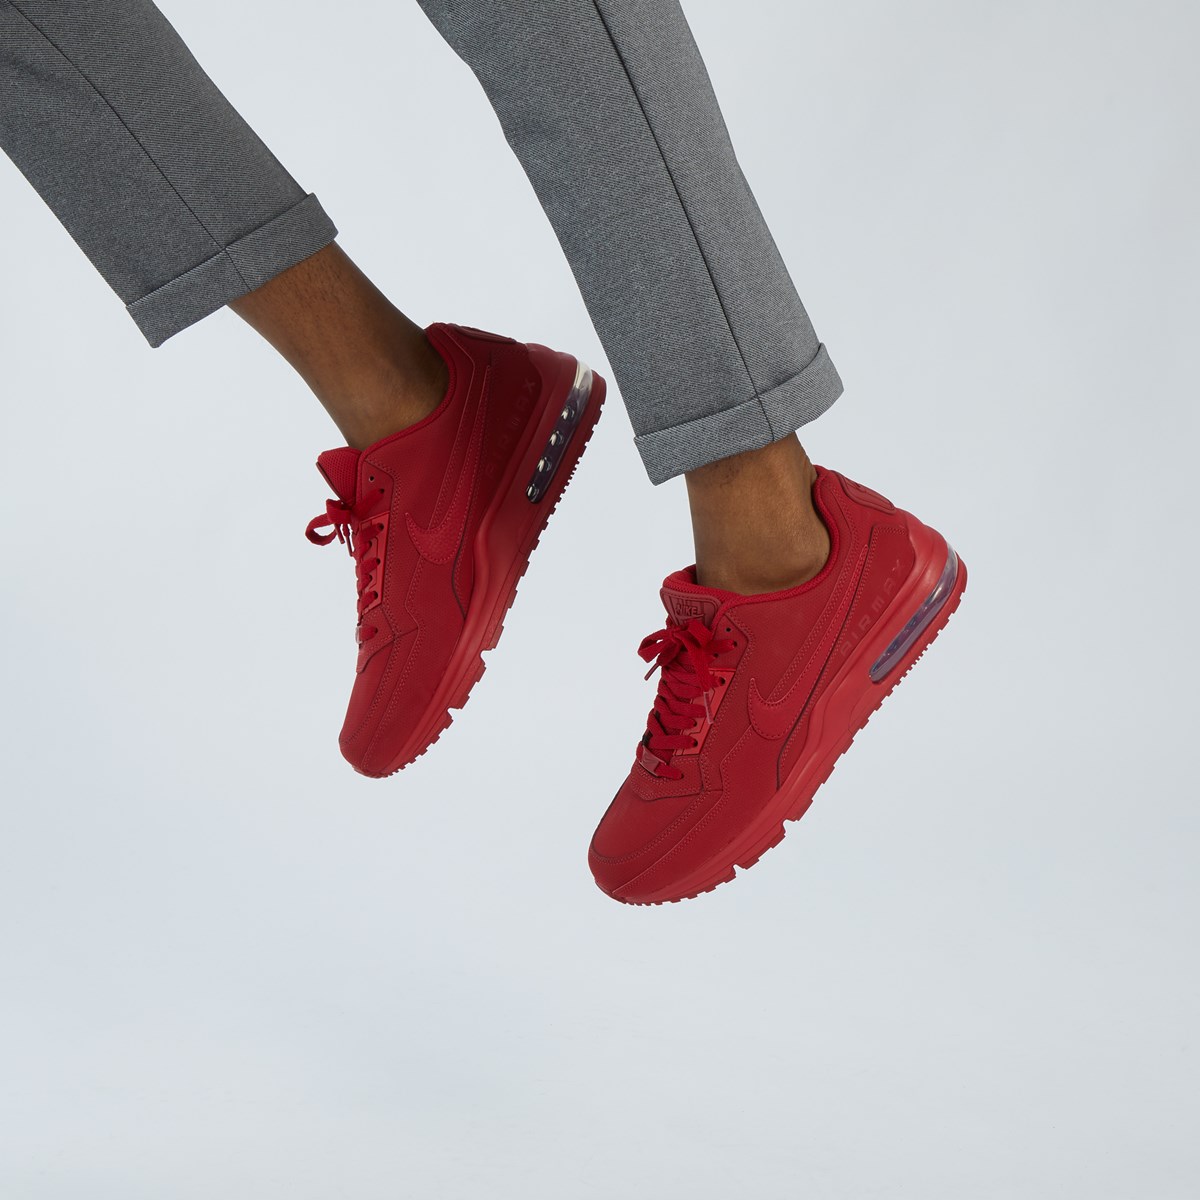 Men's Air Max LTD 3 Sneakers in Red 